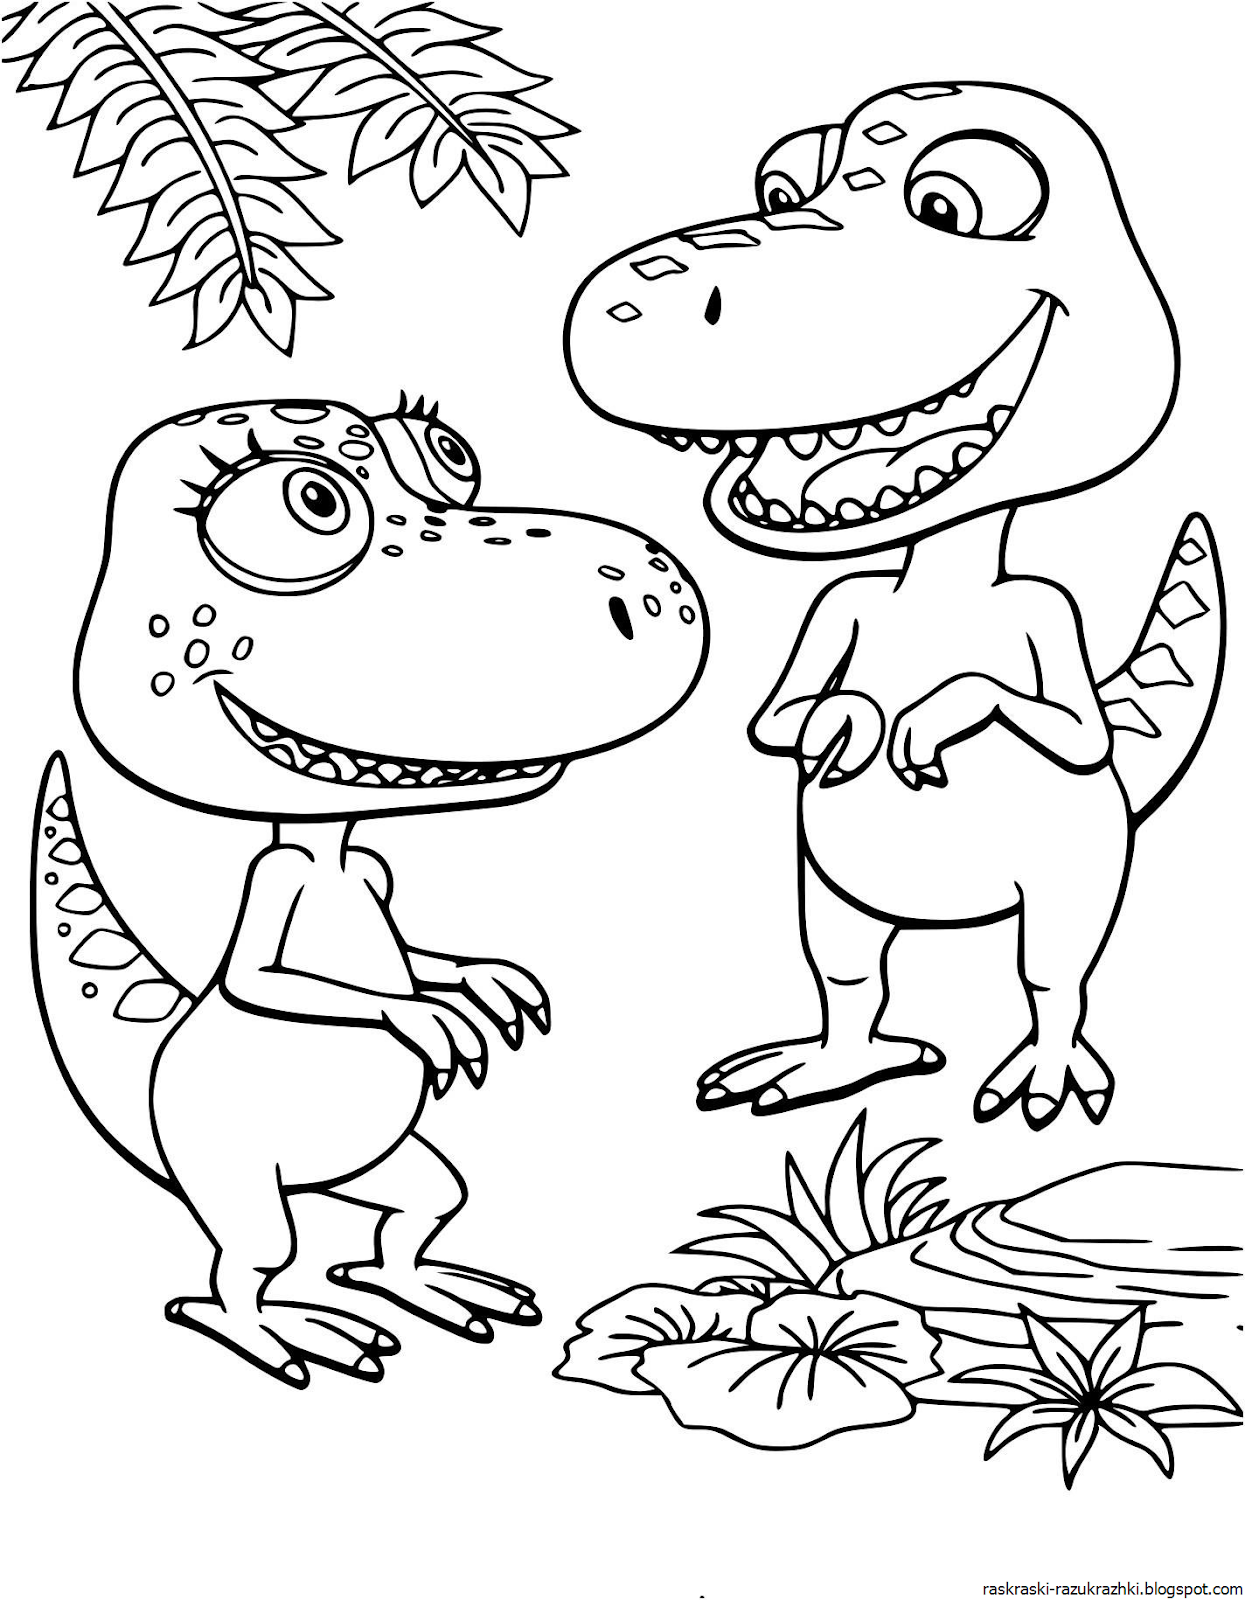 Динозавр раскраска распечатать а4. Бадди поезд динозавров раскраска. Динозавры / раскраска. Раскраски для мальчиков динозавры.